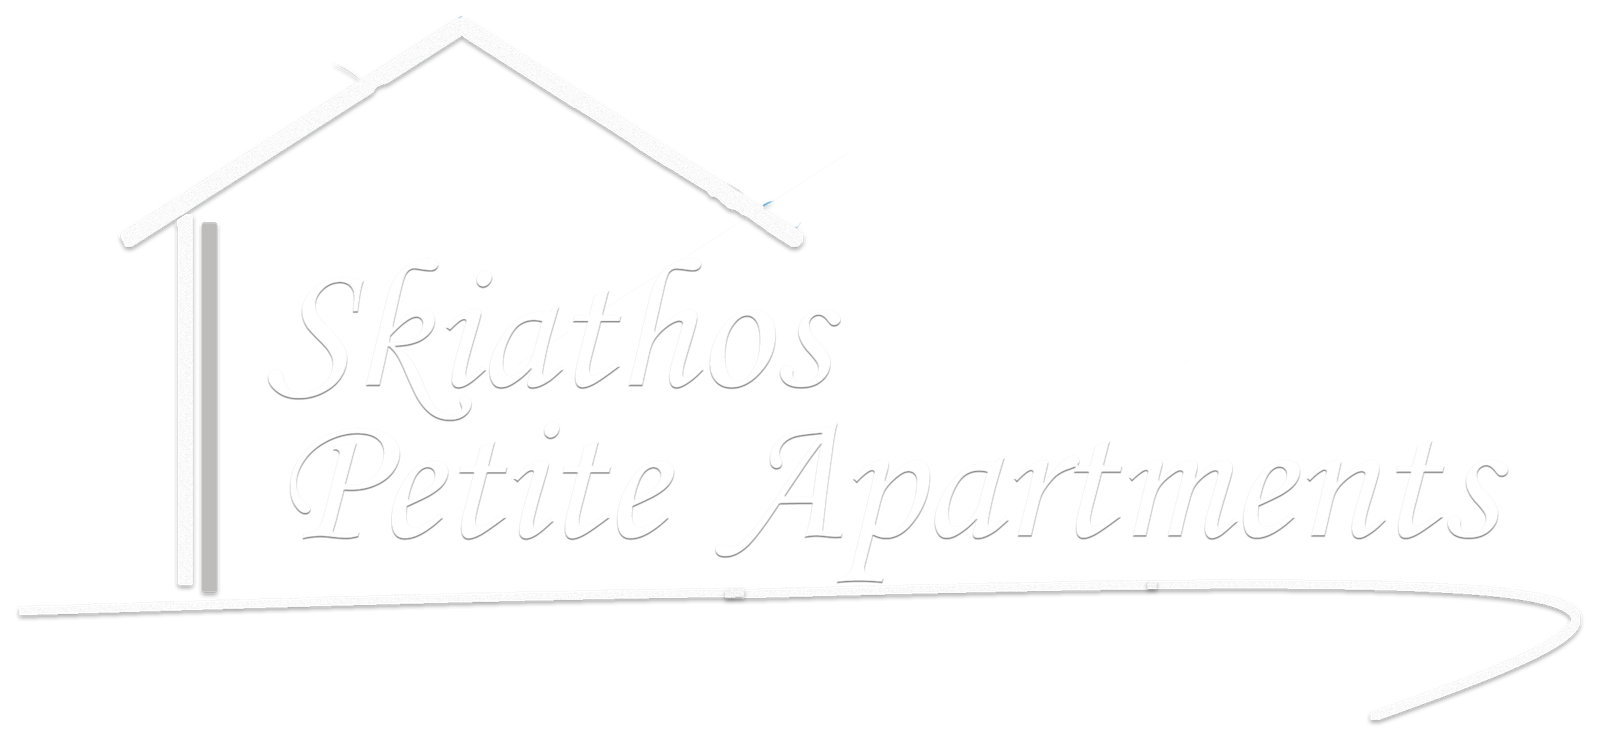 Skiathos Petite Apartments | Hello world! - Skiathos Petite Apartments